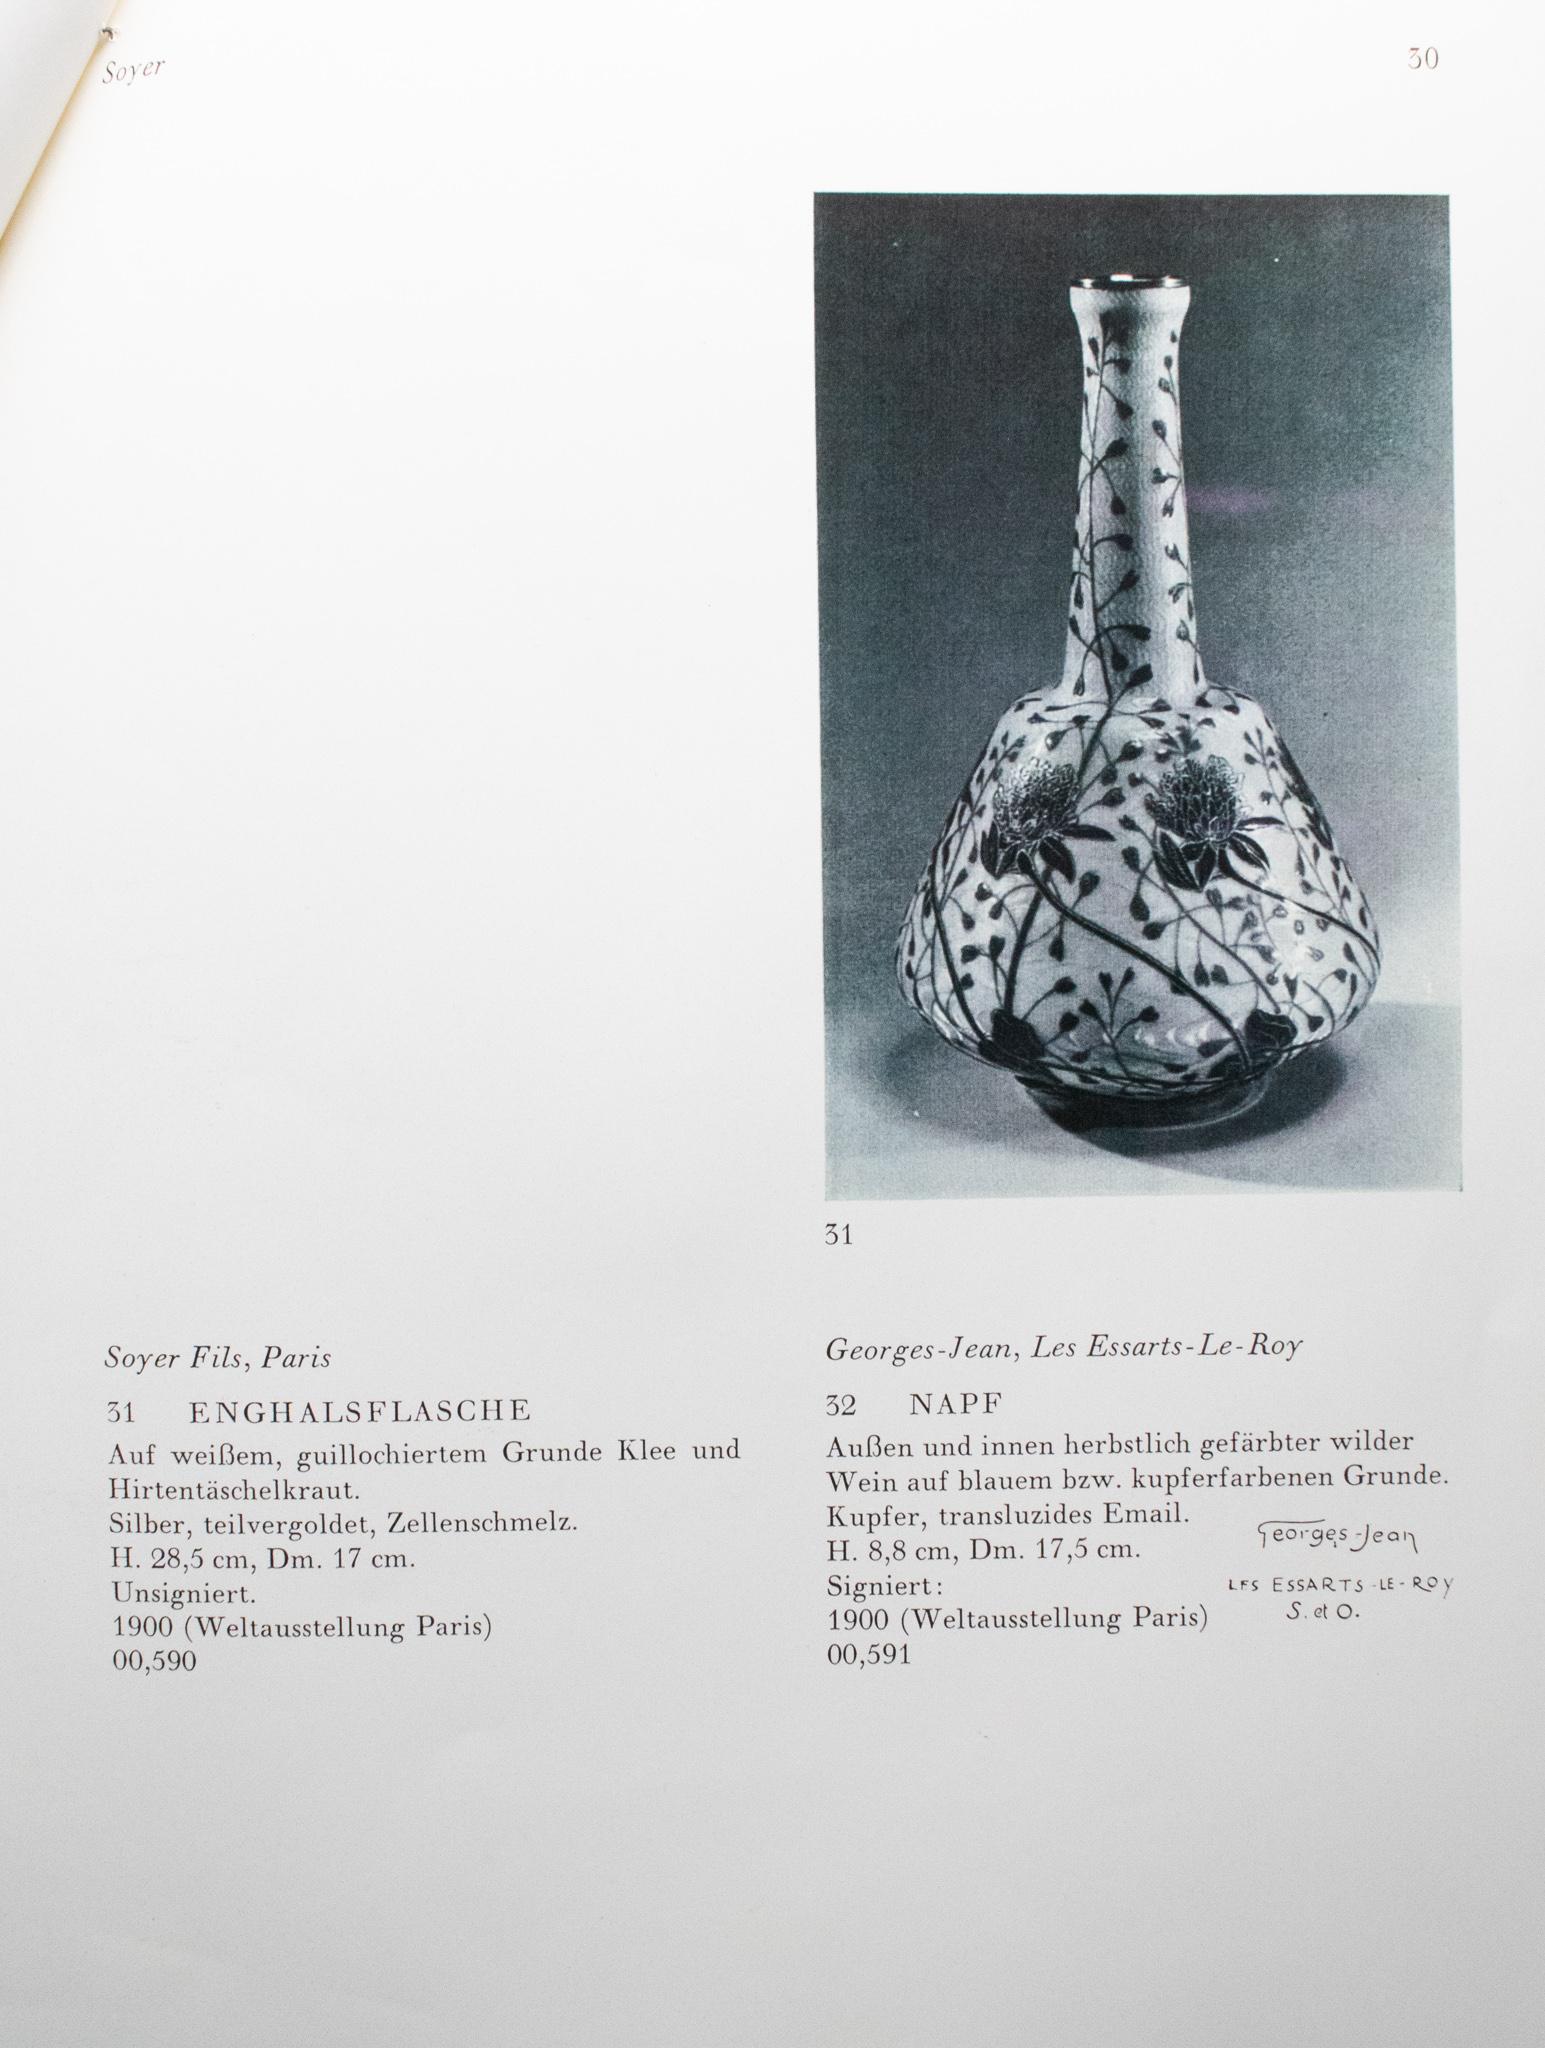 Beeindruckende Vase im Jugendstil, entworfen von Soyer Et Fils.

Ein extrem seltenes und sehr wichtiges Stück, das in Paris, Frankreich, im Atelier von Soyer Et Fils während der Jugendstilzeit, ca. 1898-1900, geschaffen wurde.

Diese geriffelte